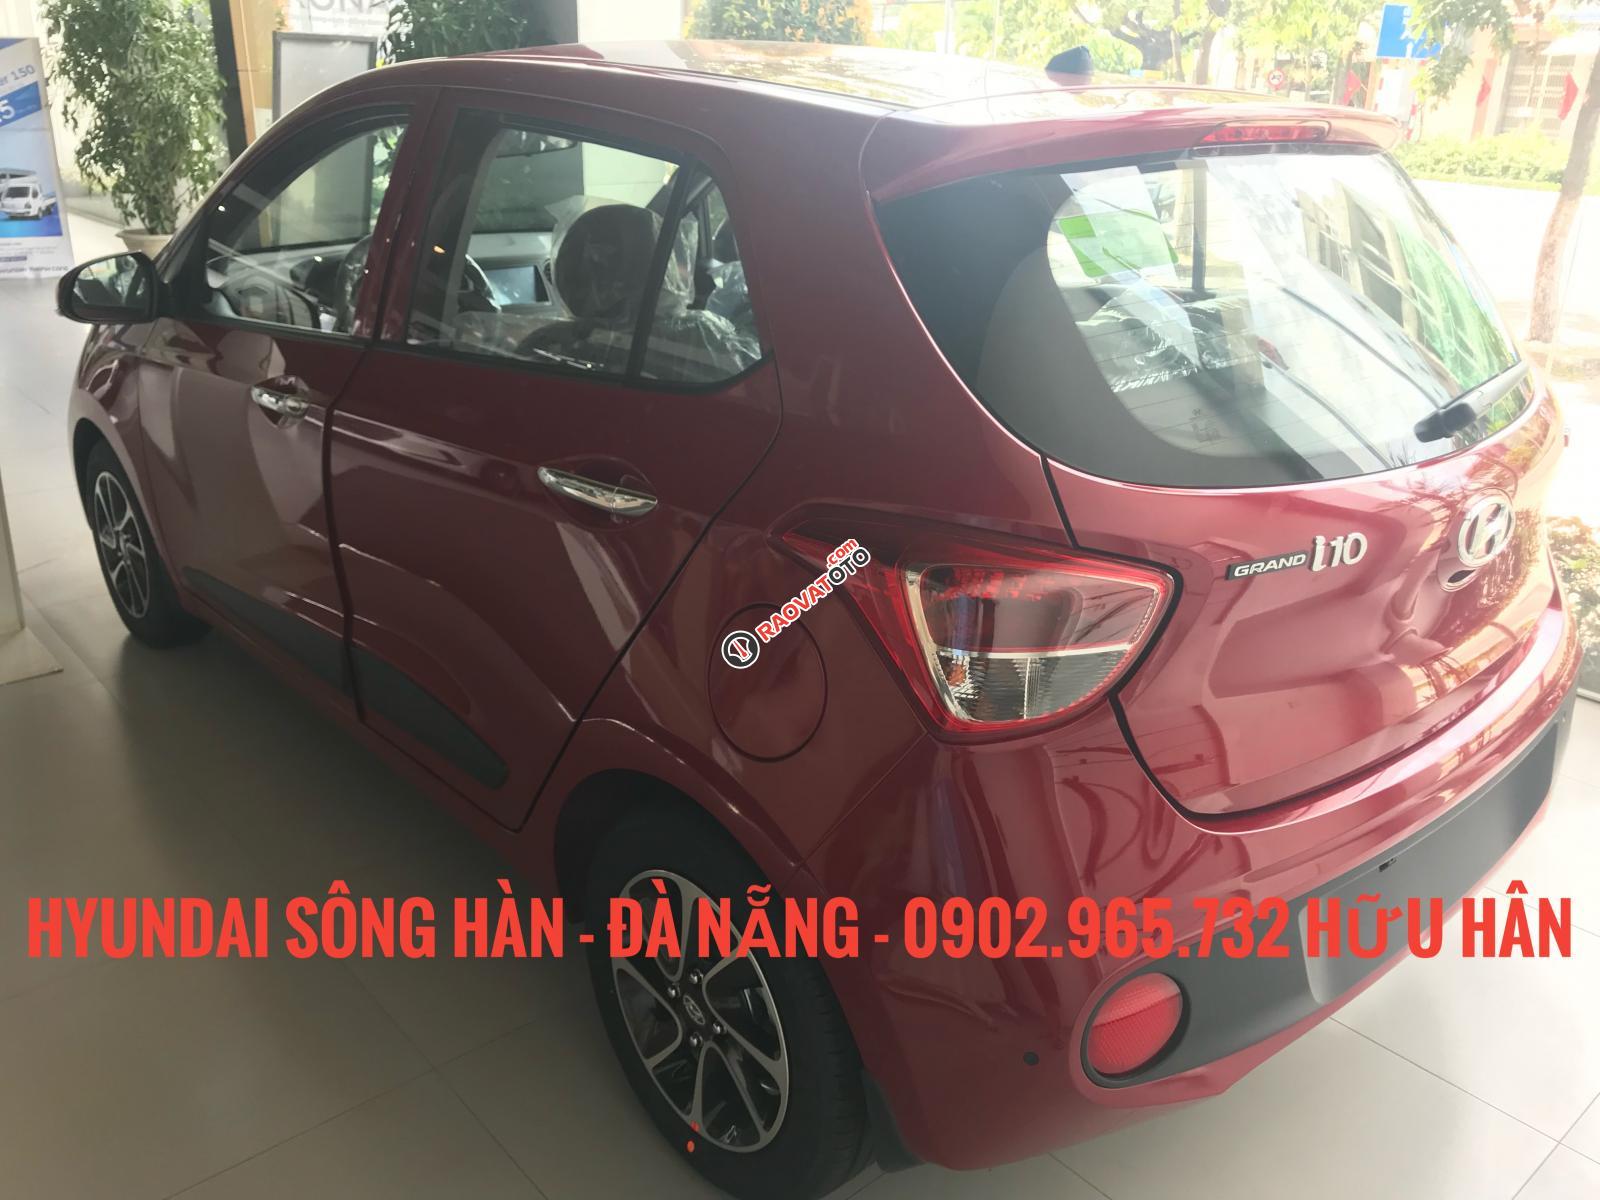 Bán xe Hyundai Grand i10 2019, màu đỏ, giá tốt nhất Đà Nẵng, chỉ cần 150 triệu để nhận xe, LH: 0902.965.732 Hữu Hân-5